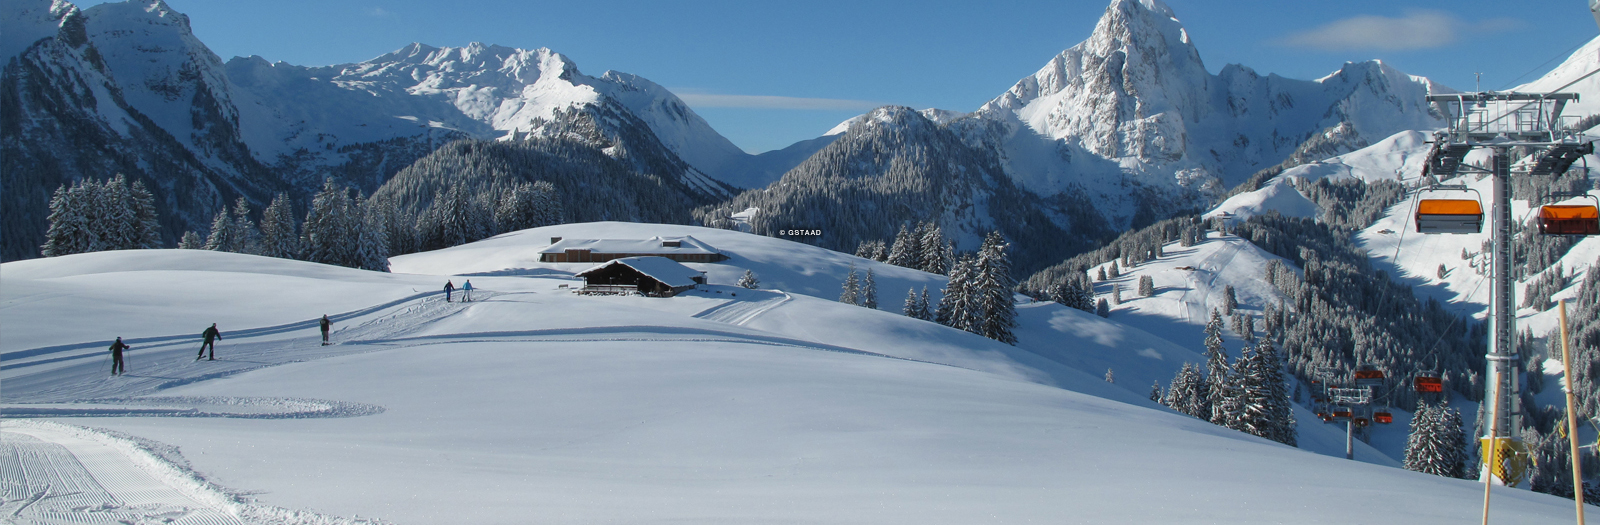 gstaad beginner skiing